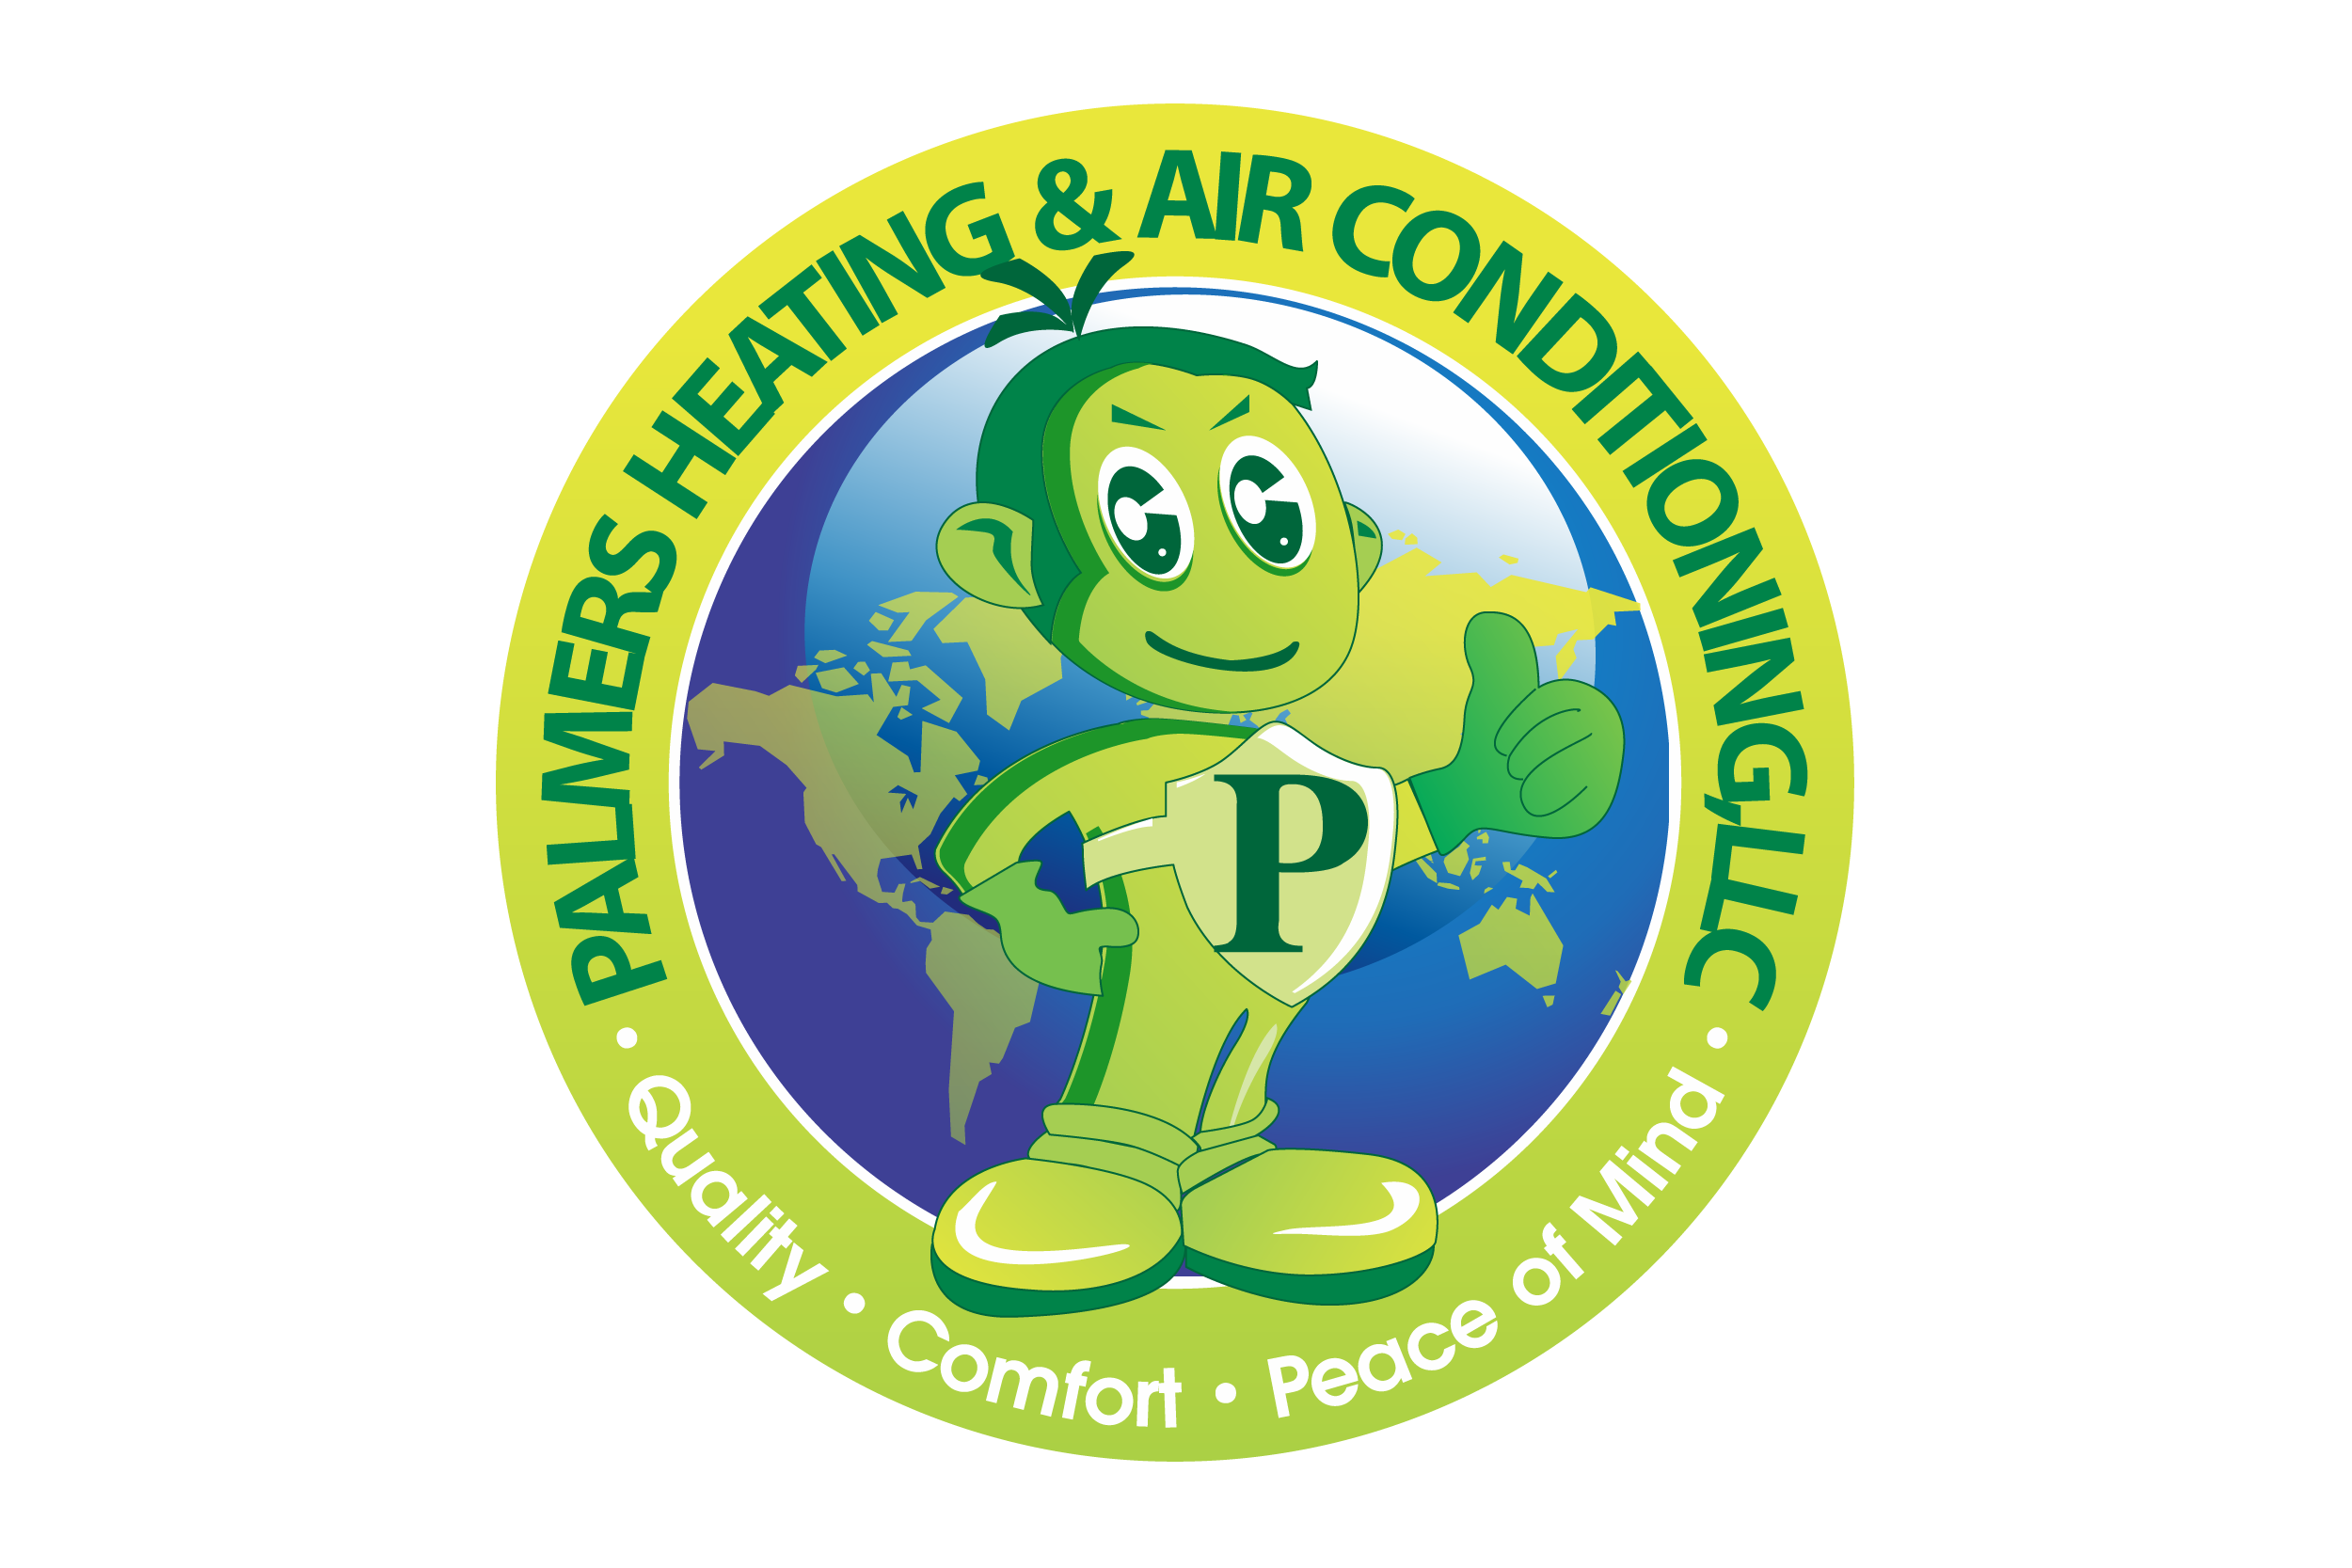 Palmer Heating & Air